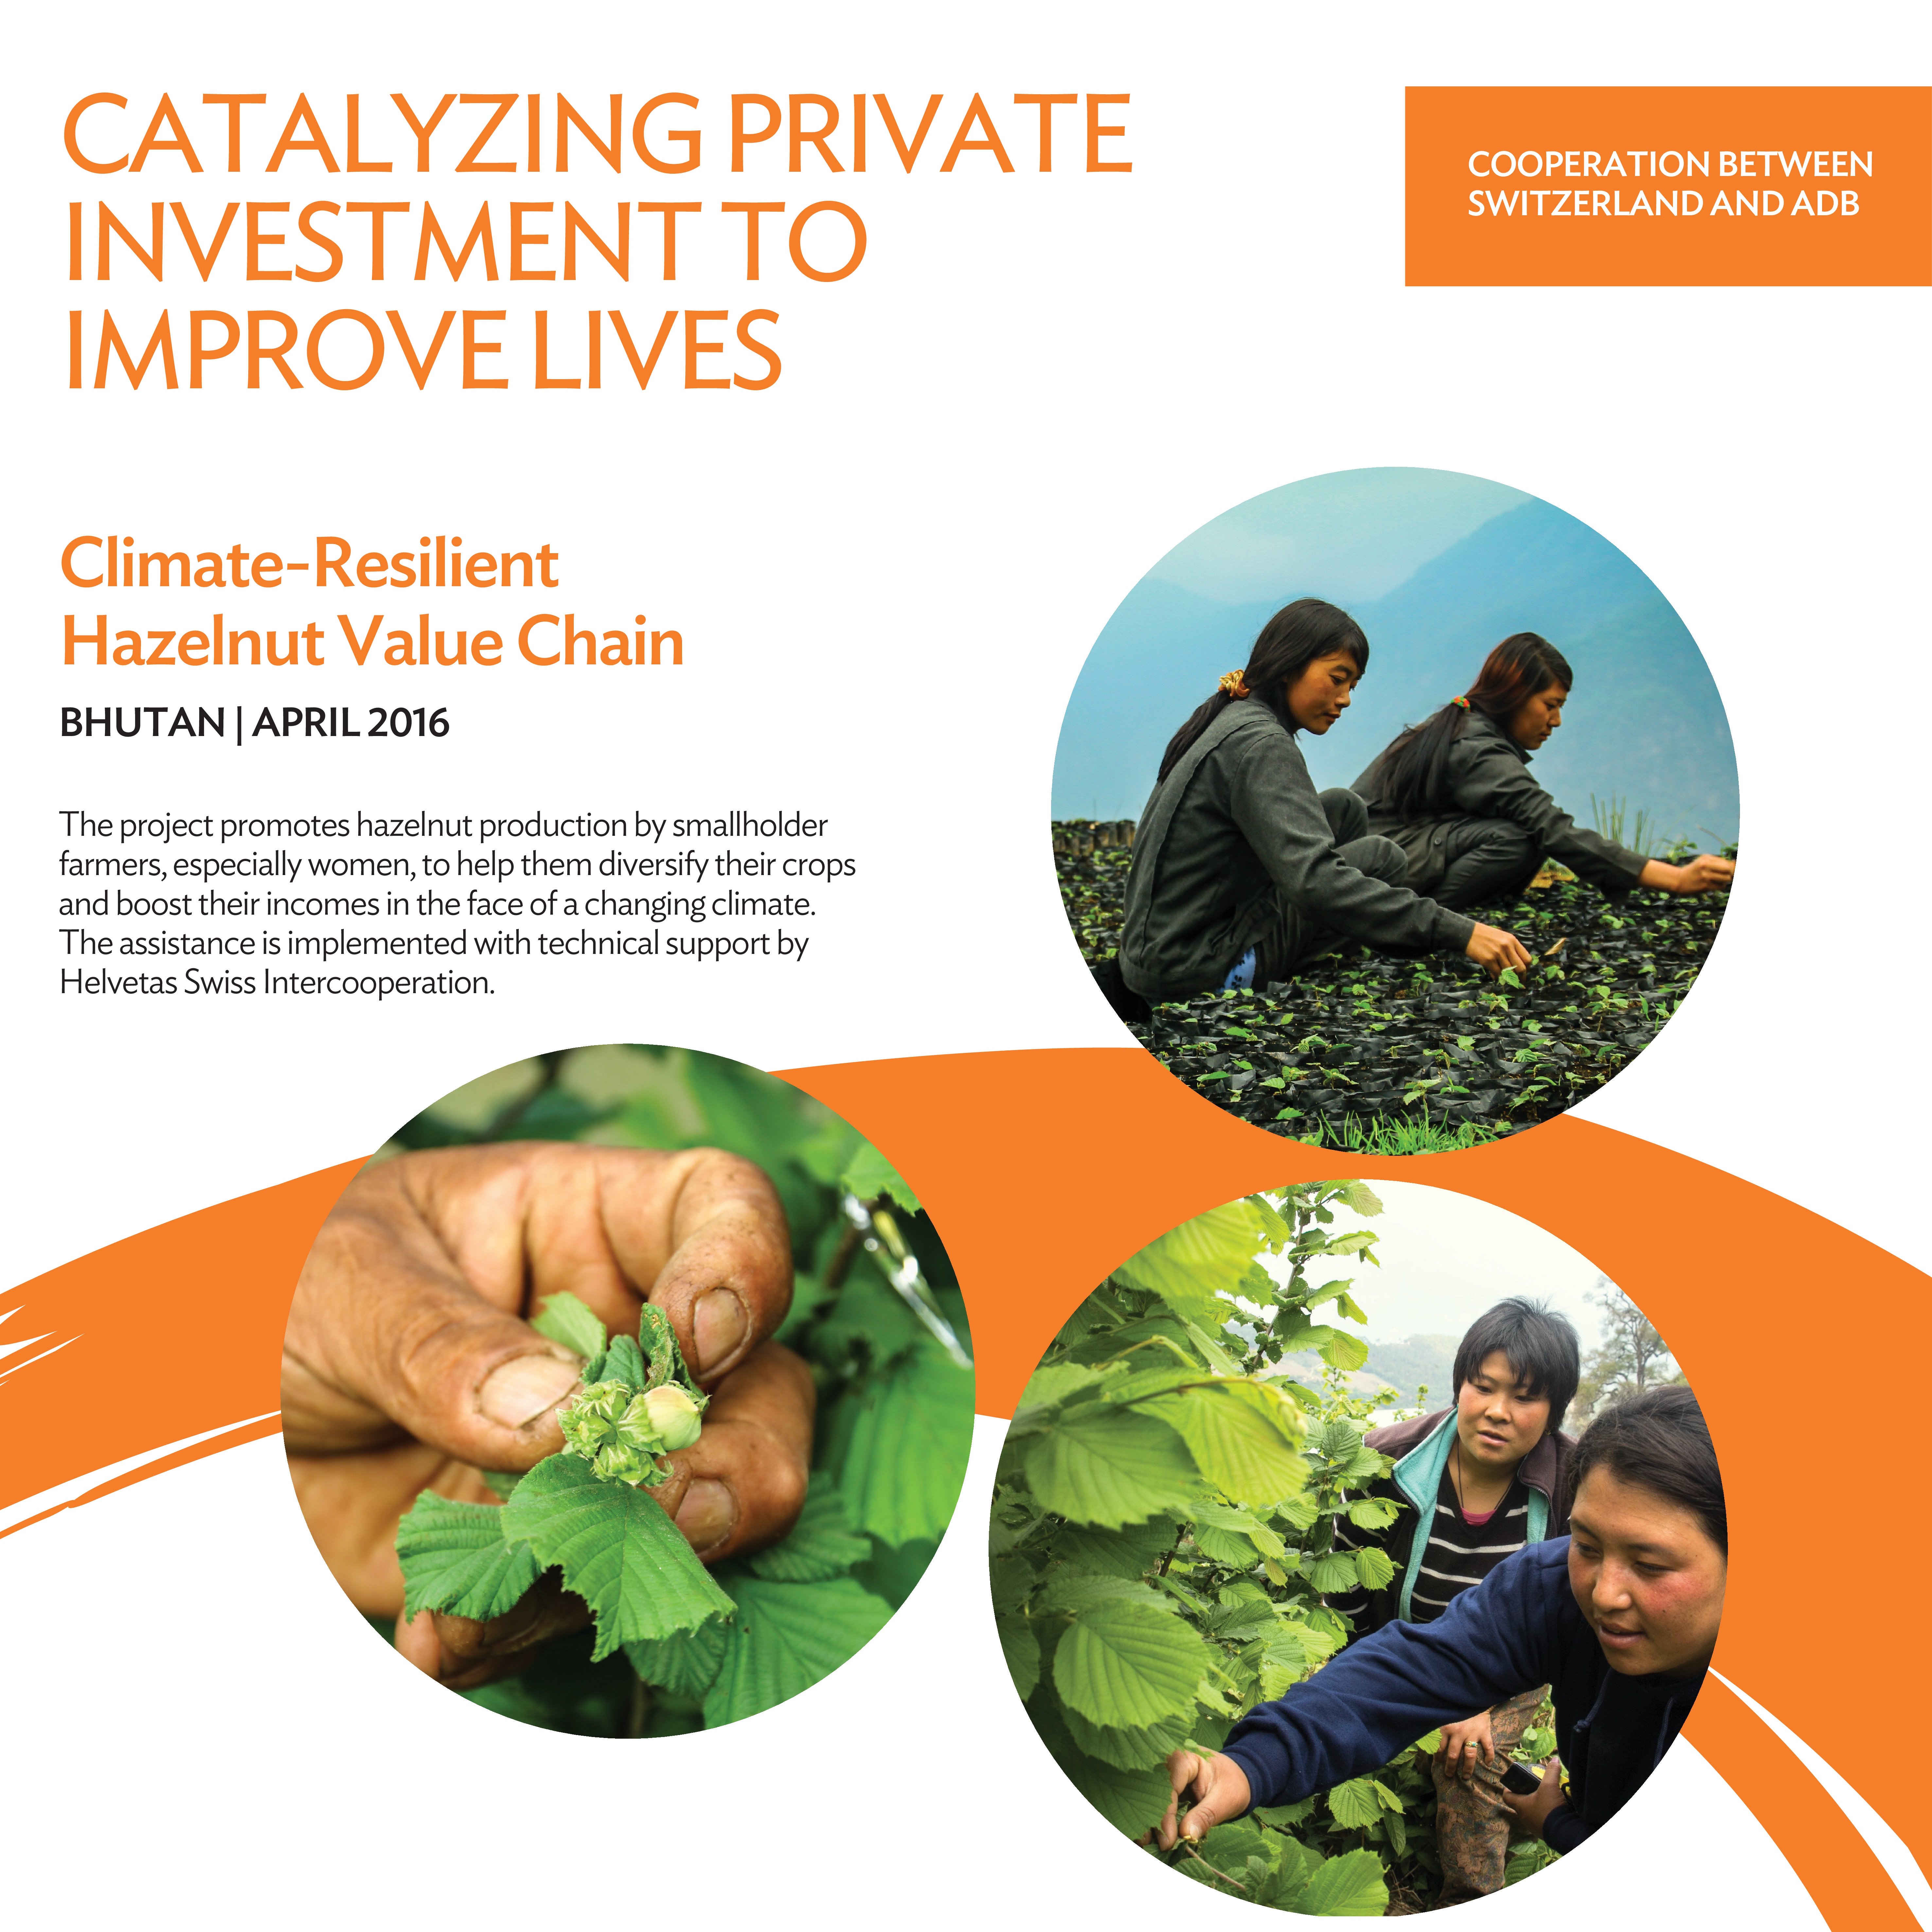 Climate-Resilient Hazelnut Value Chain, Bhutan, April 2016